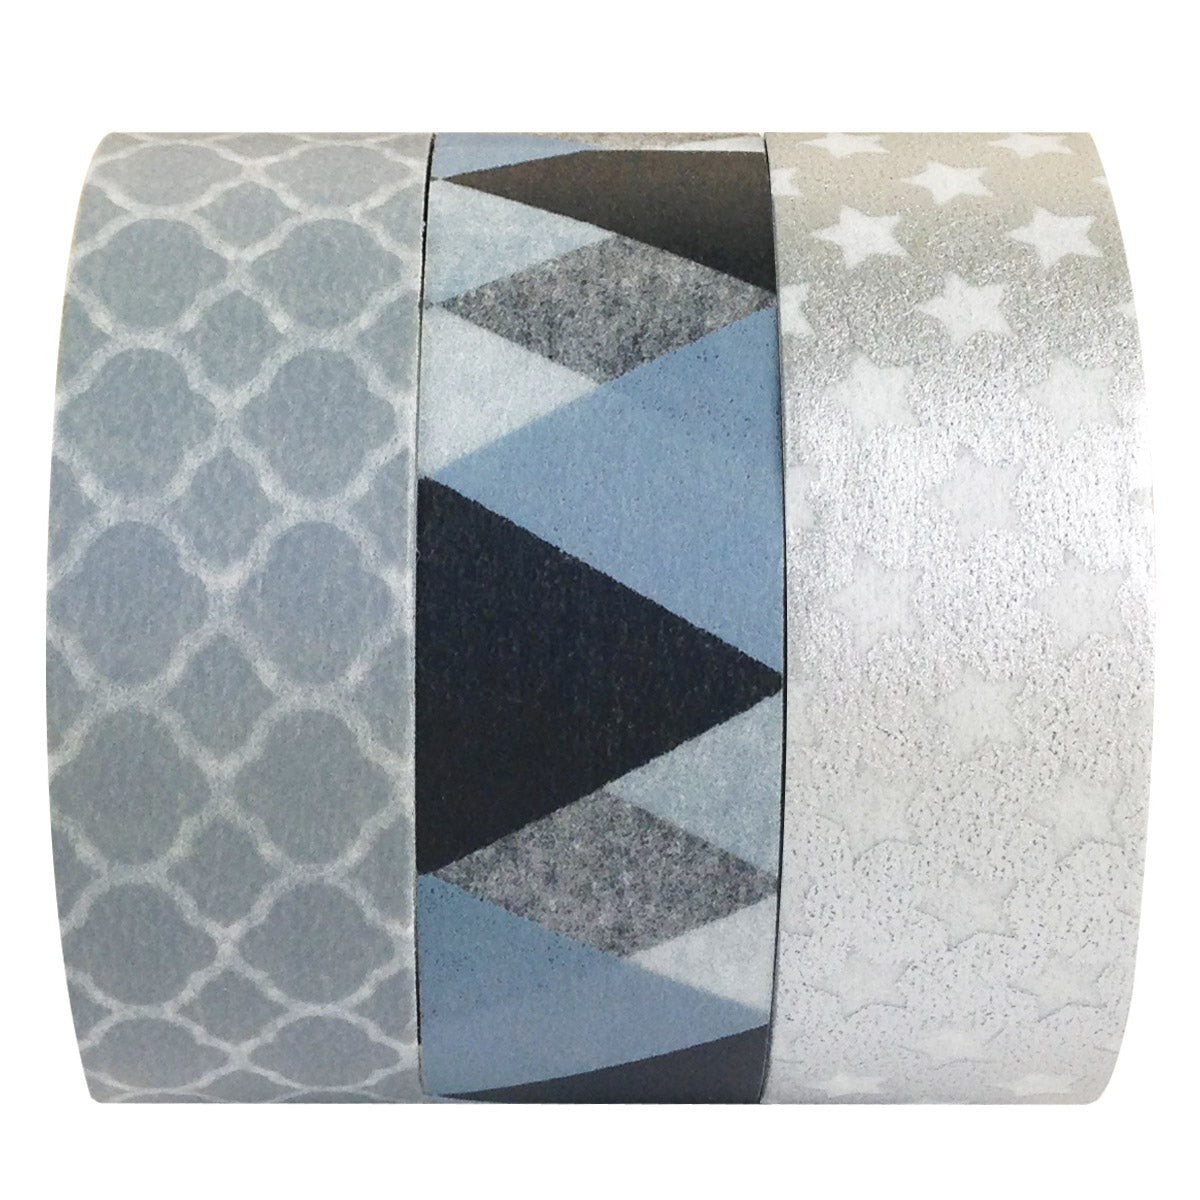 Silver Lining Japanese Washi Masking Tape (Set of 3)